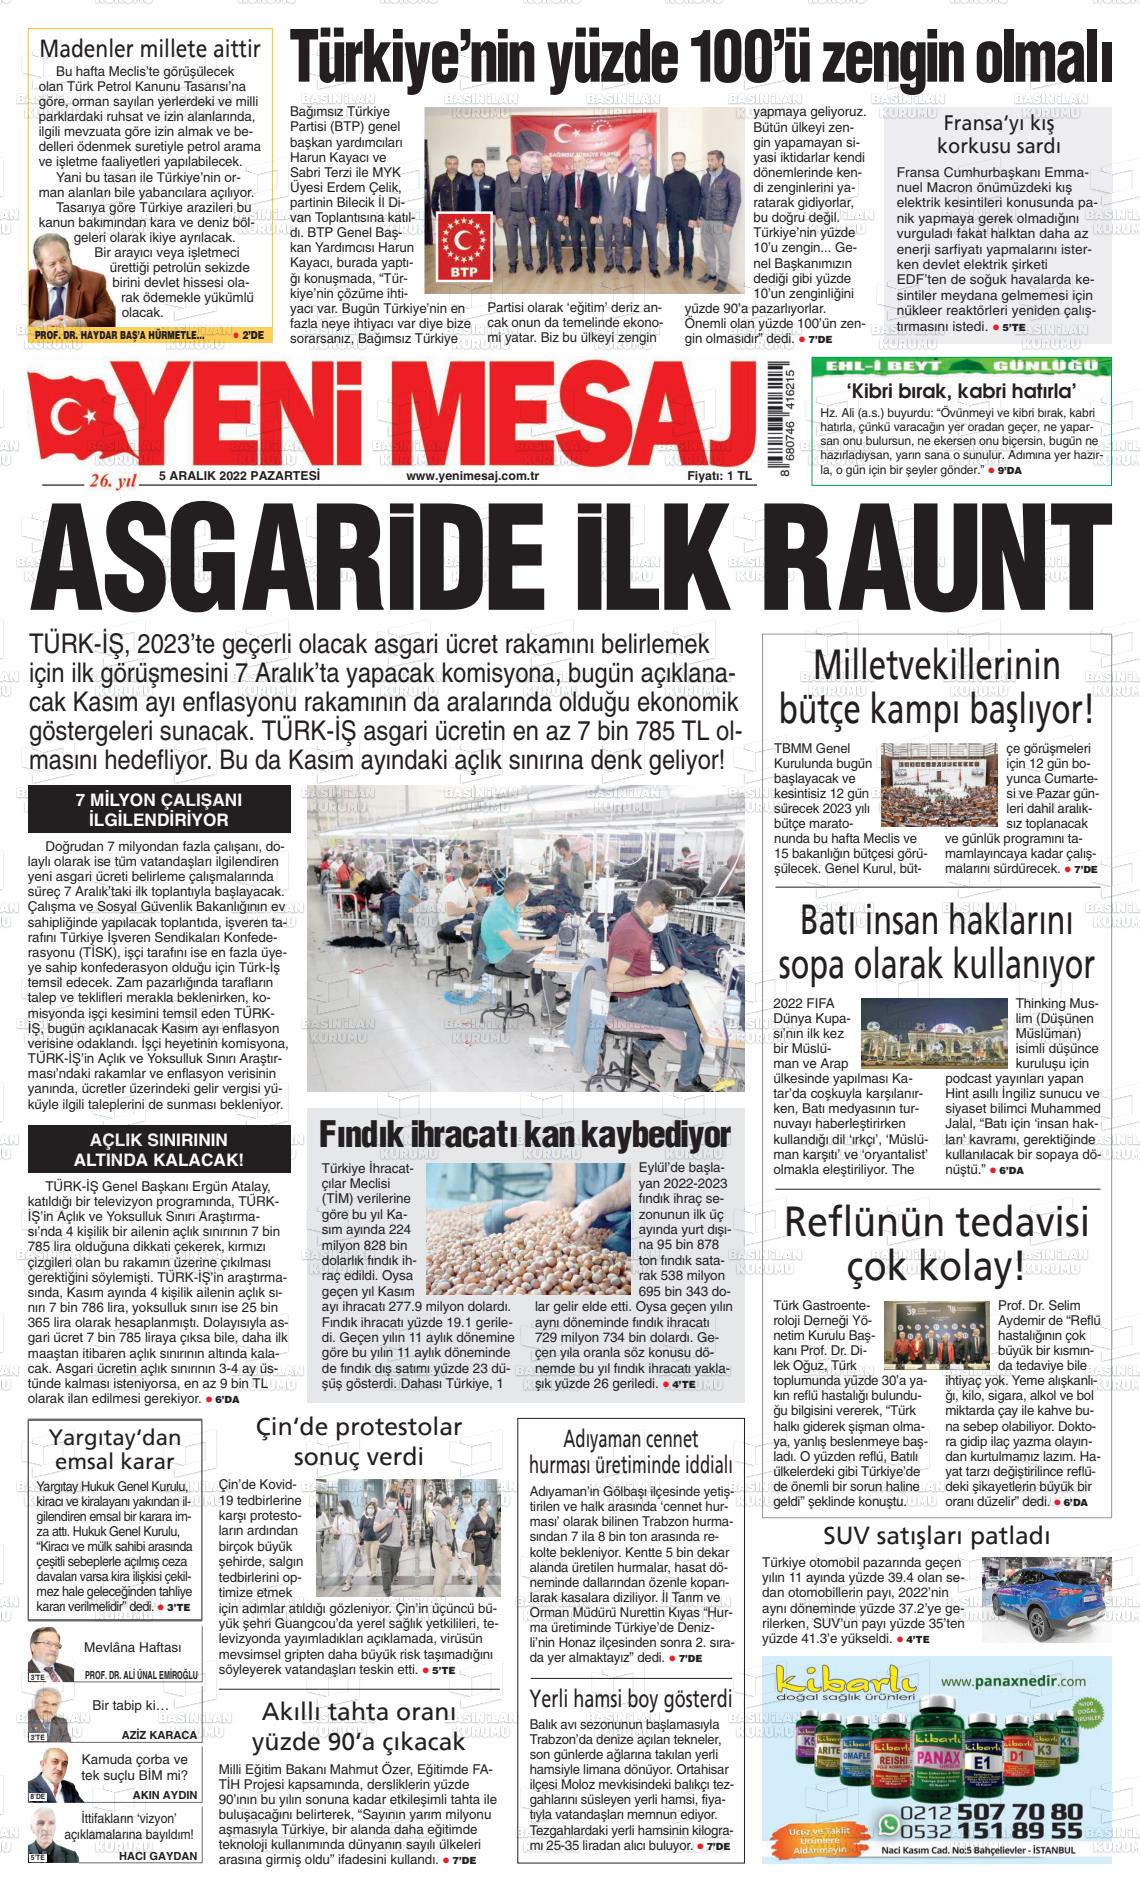 05 Aralık 2022 Yeni Mesaj Gazete Manşeti